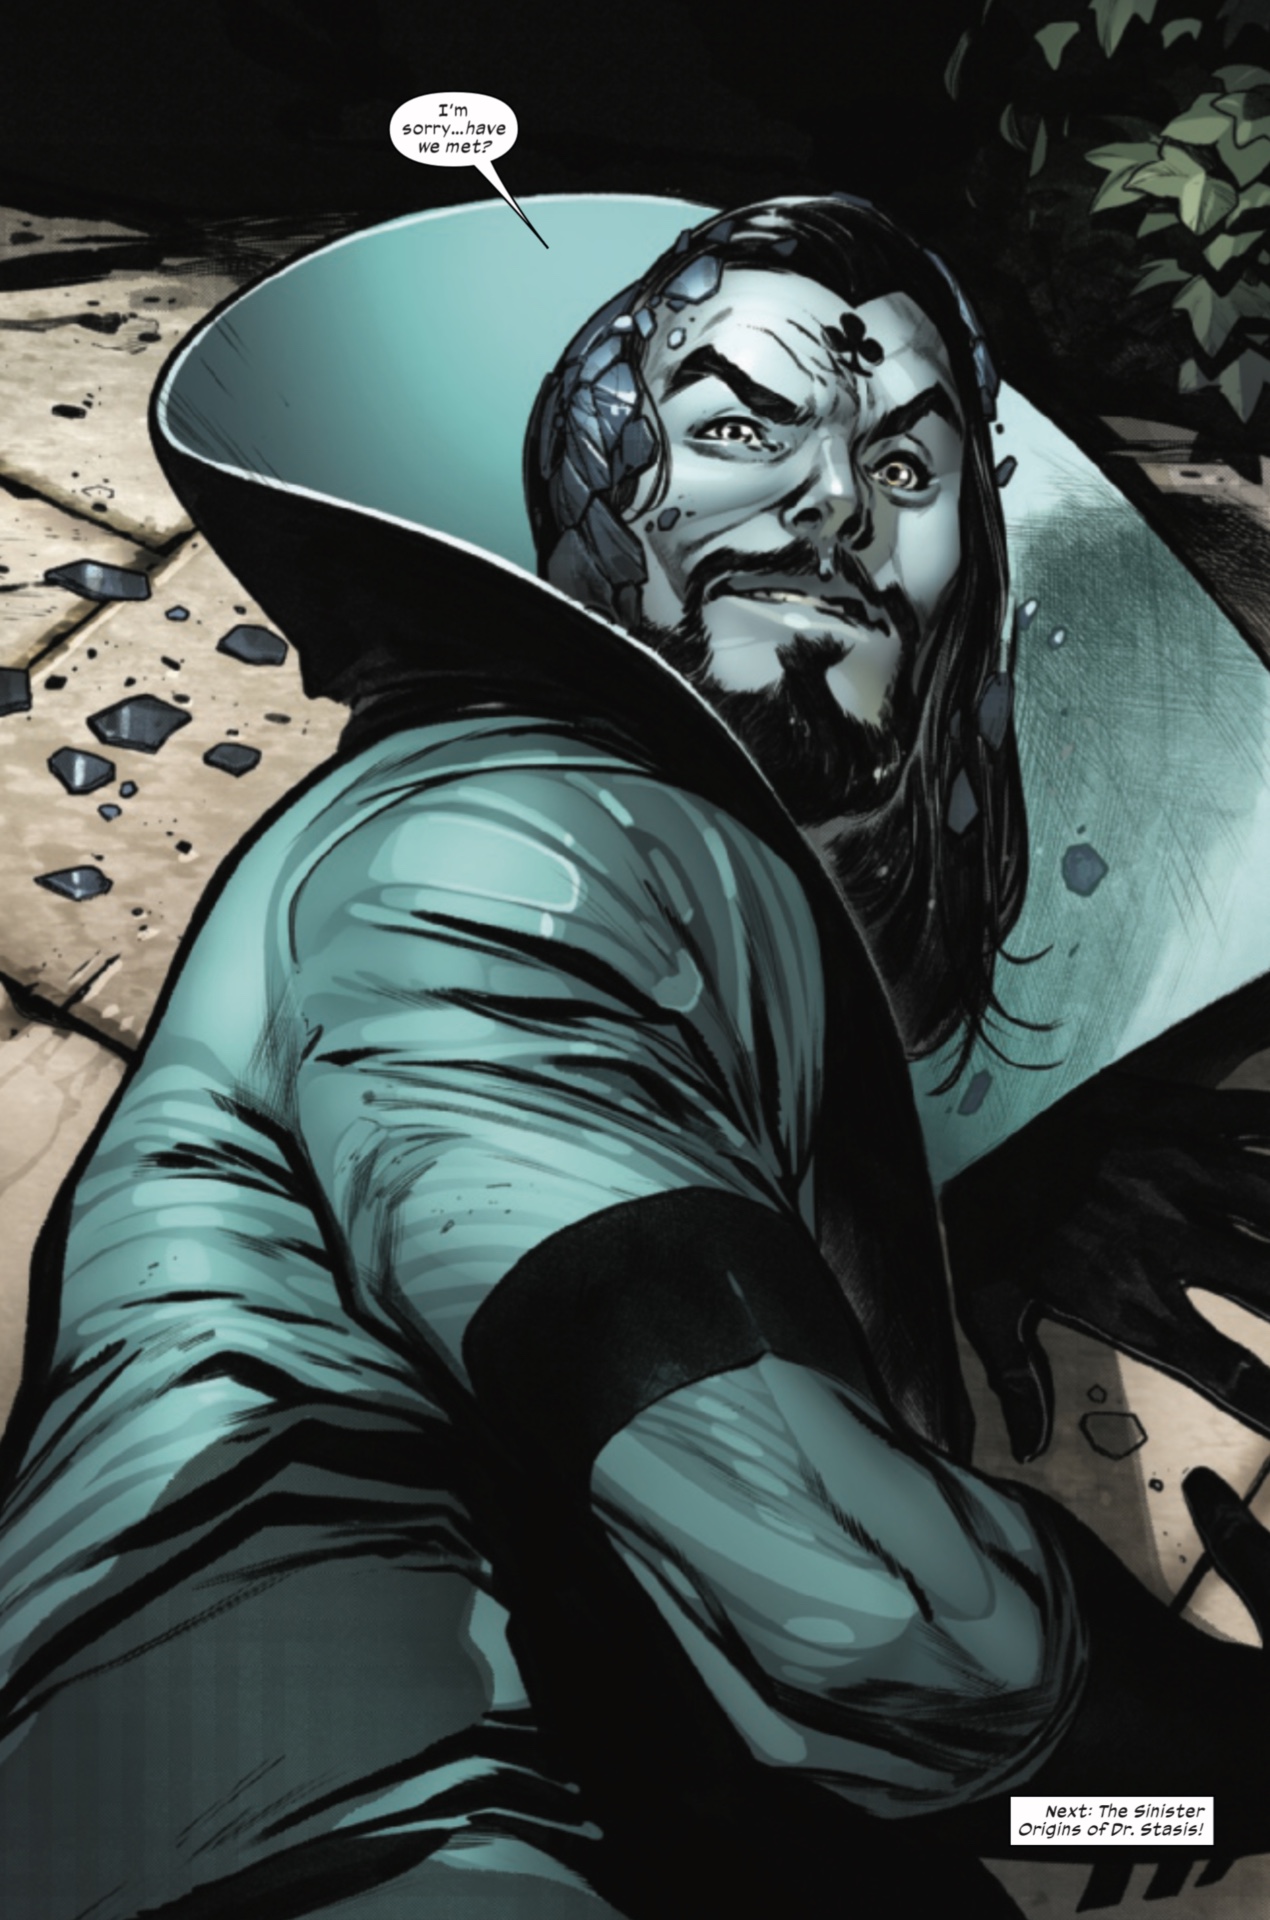 Die geheime Identität von Dr. Stasis wurde in X-Men # 11 enthüllt